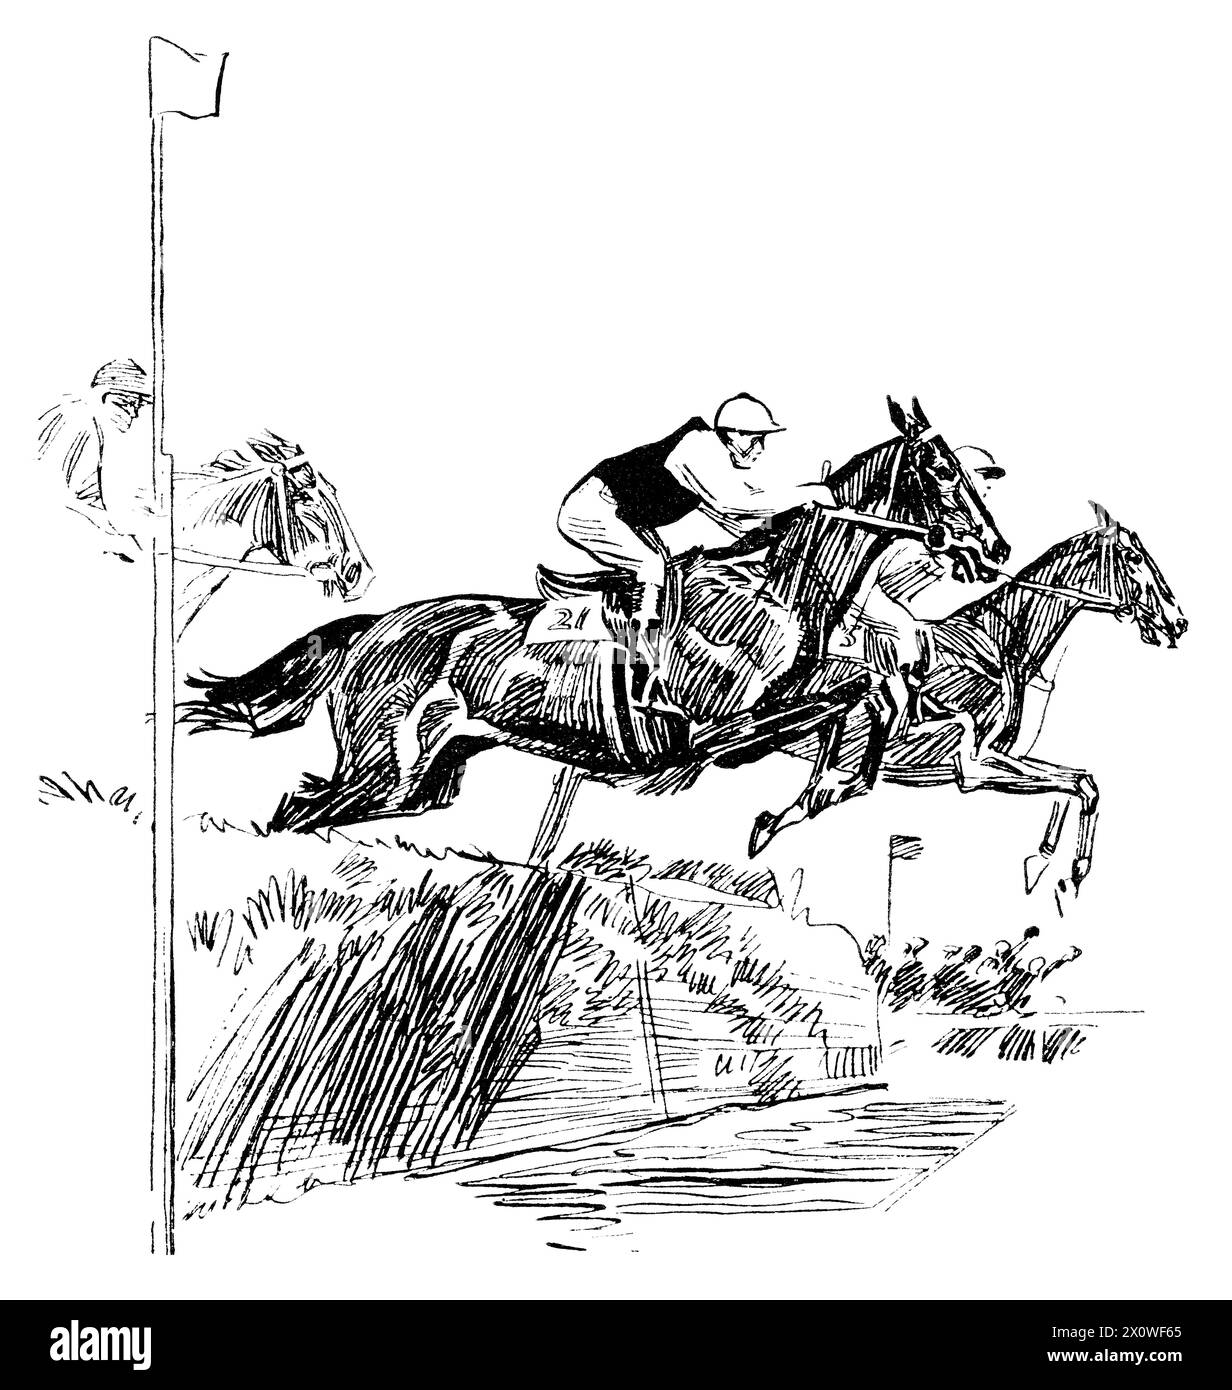 Illustrazione pubblicitaria del 1920 di una corsa ippica con cavalli che fanno un salto su un ippodromo. Foto Stock